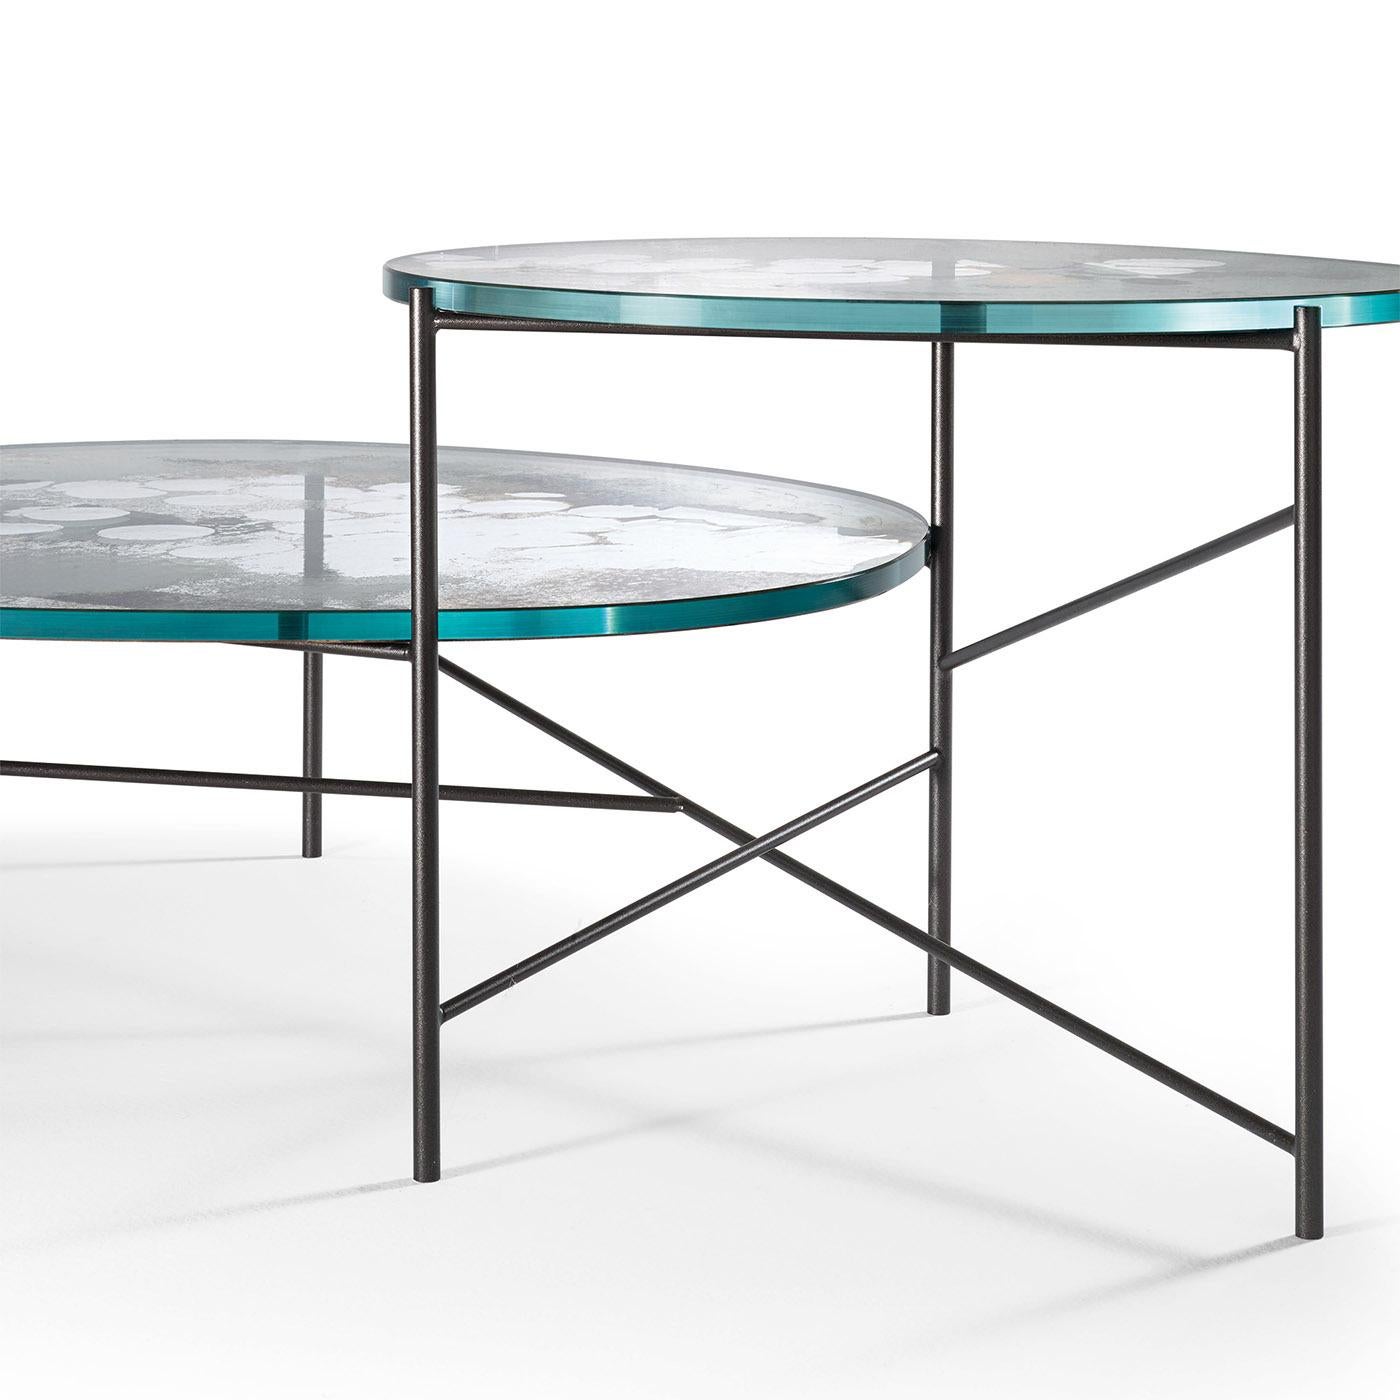 Cette table basse contemporaine fait partie de l'innovante collection K conçue par Giovanni Luca Ferreri, qui présente des surfaces décoratives en miroir dans un cadre épuré et essentiel. Ces structures définissent des géométries claires et